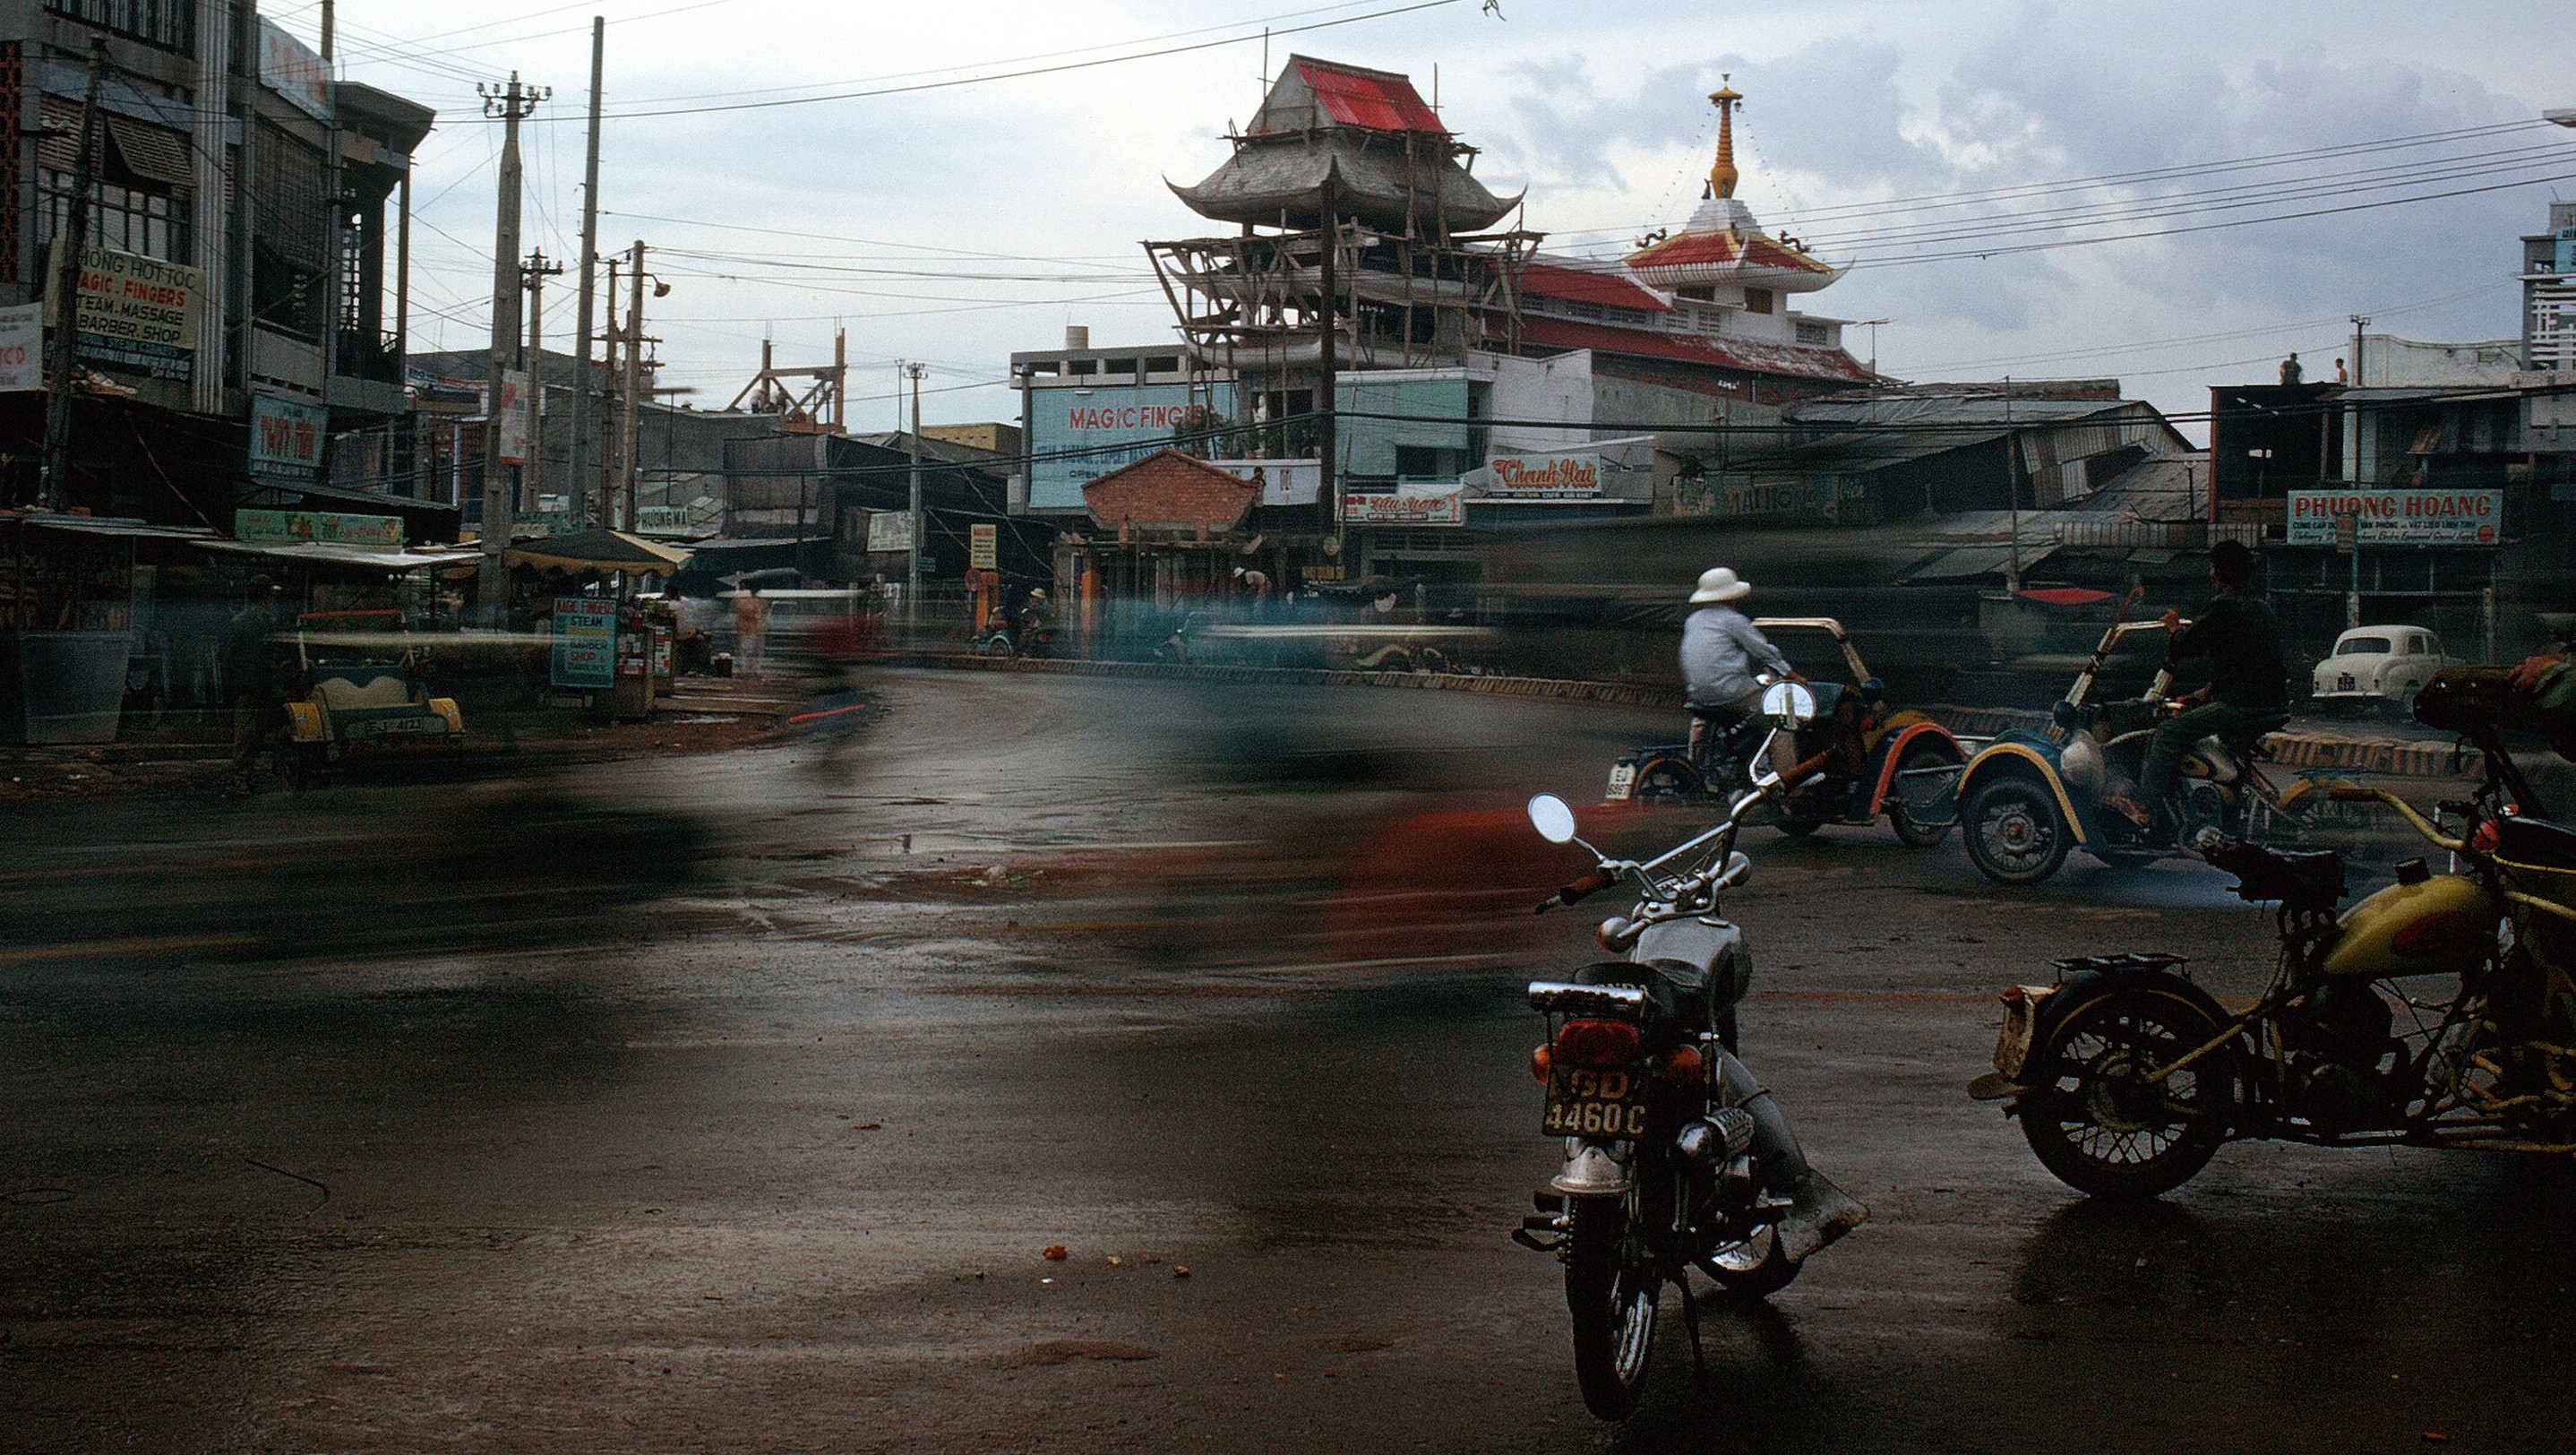 1970 07 14 Saigon street 01